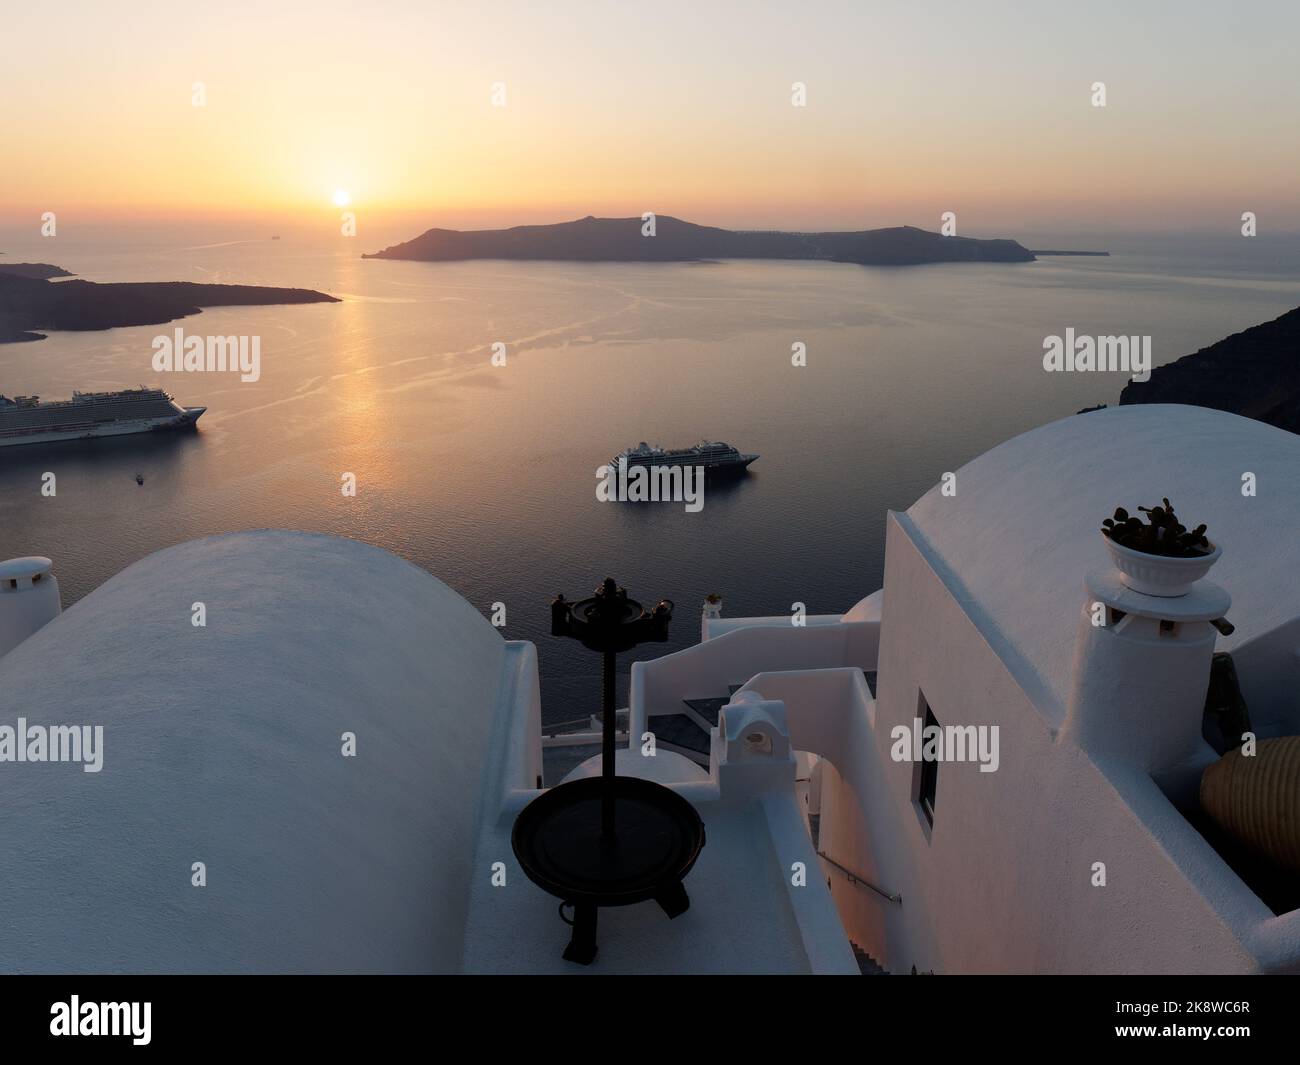 Vue sur la caldeira au coucher du soleil. Île grecque des Cyclades de Santorin dans la mer Égée. Banque D'Images